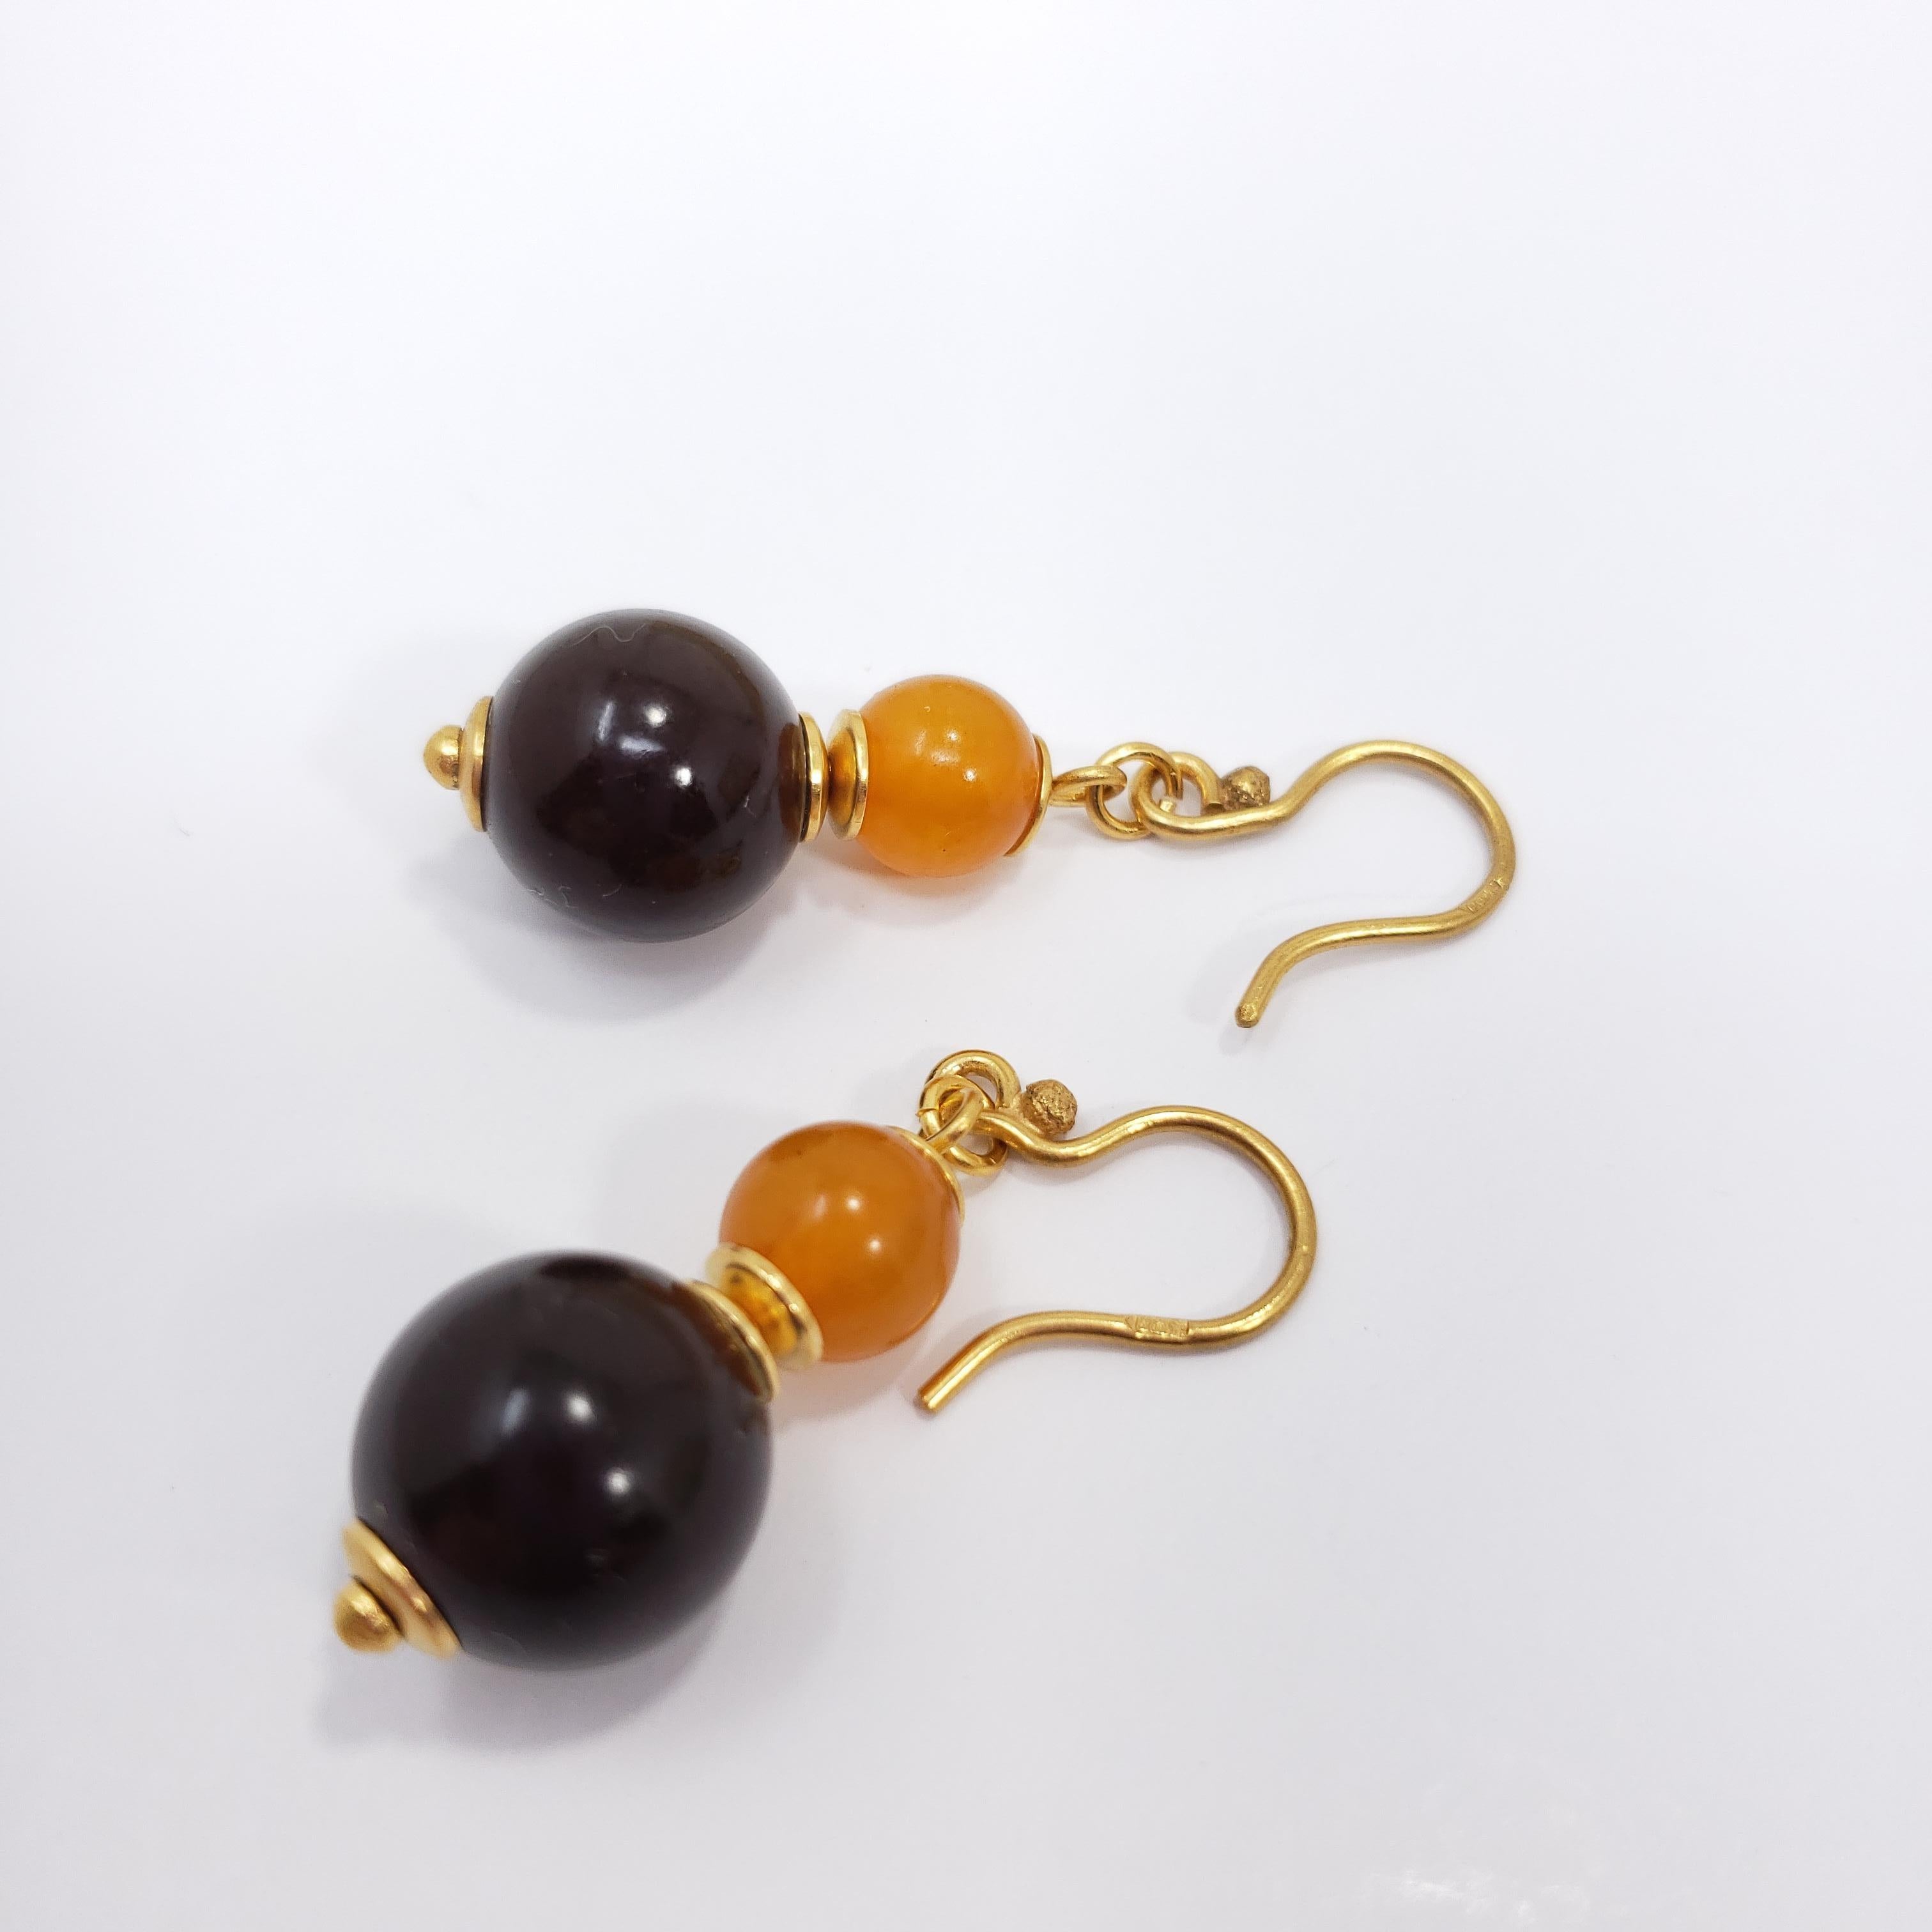 Une paire de boucles d'oreilles russes exquises. Chaque boucle d'oreille comporte deux perles d'ambre baltique aux riches couleurs orange et marron, rehaussées d'accents et de crochets en pierre dorée. Un style à part entière !

Poinçons : Marques